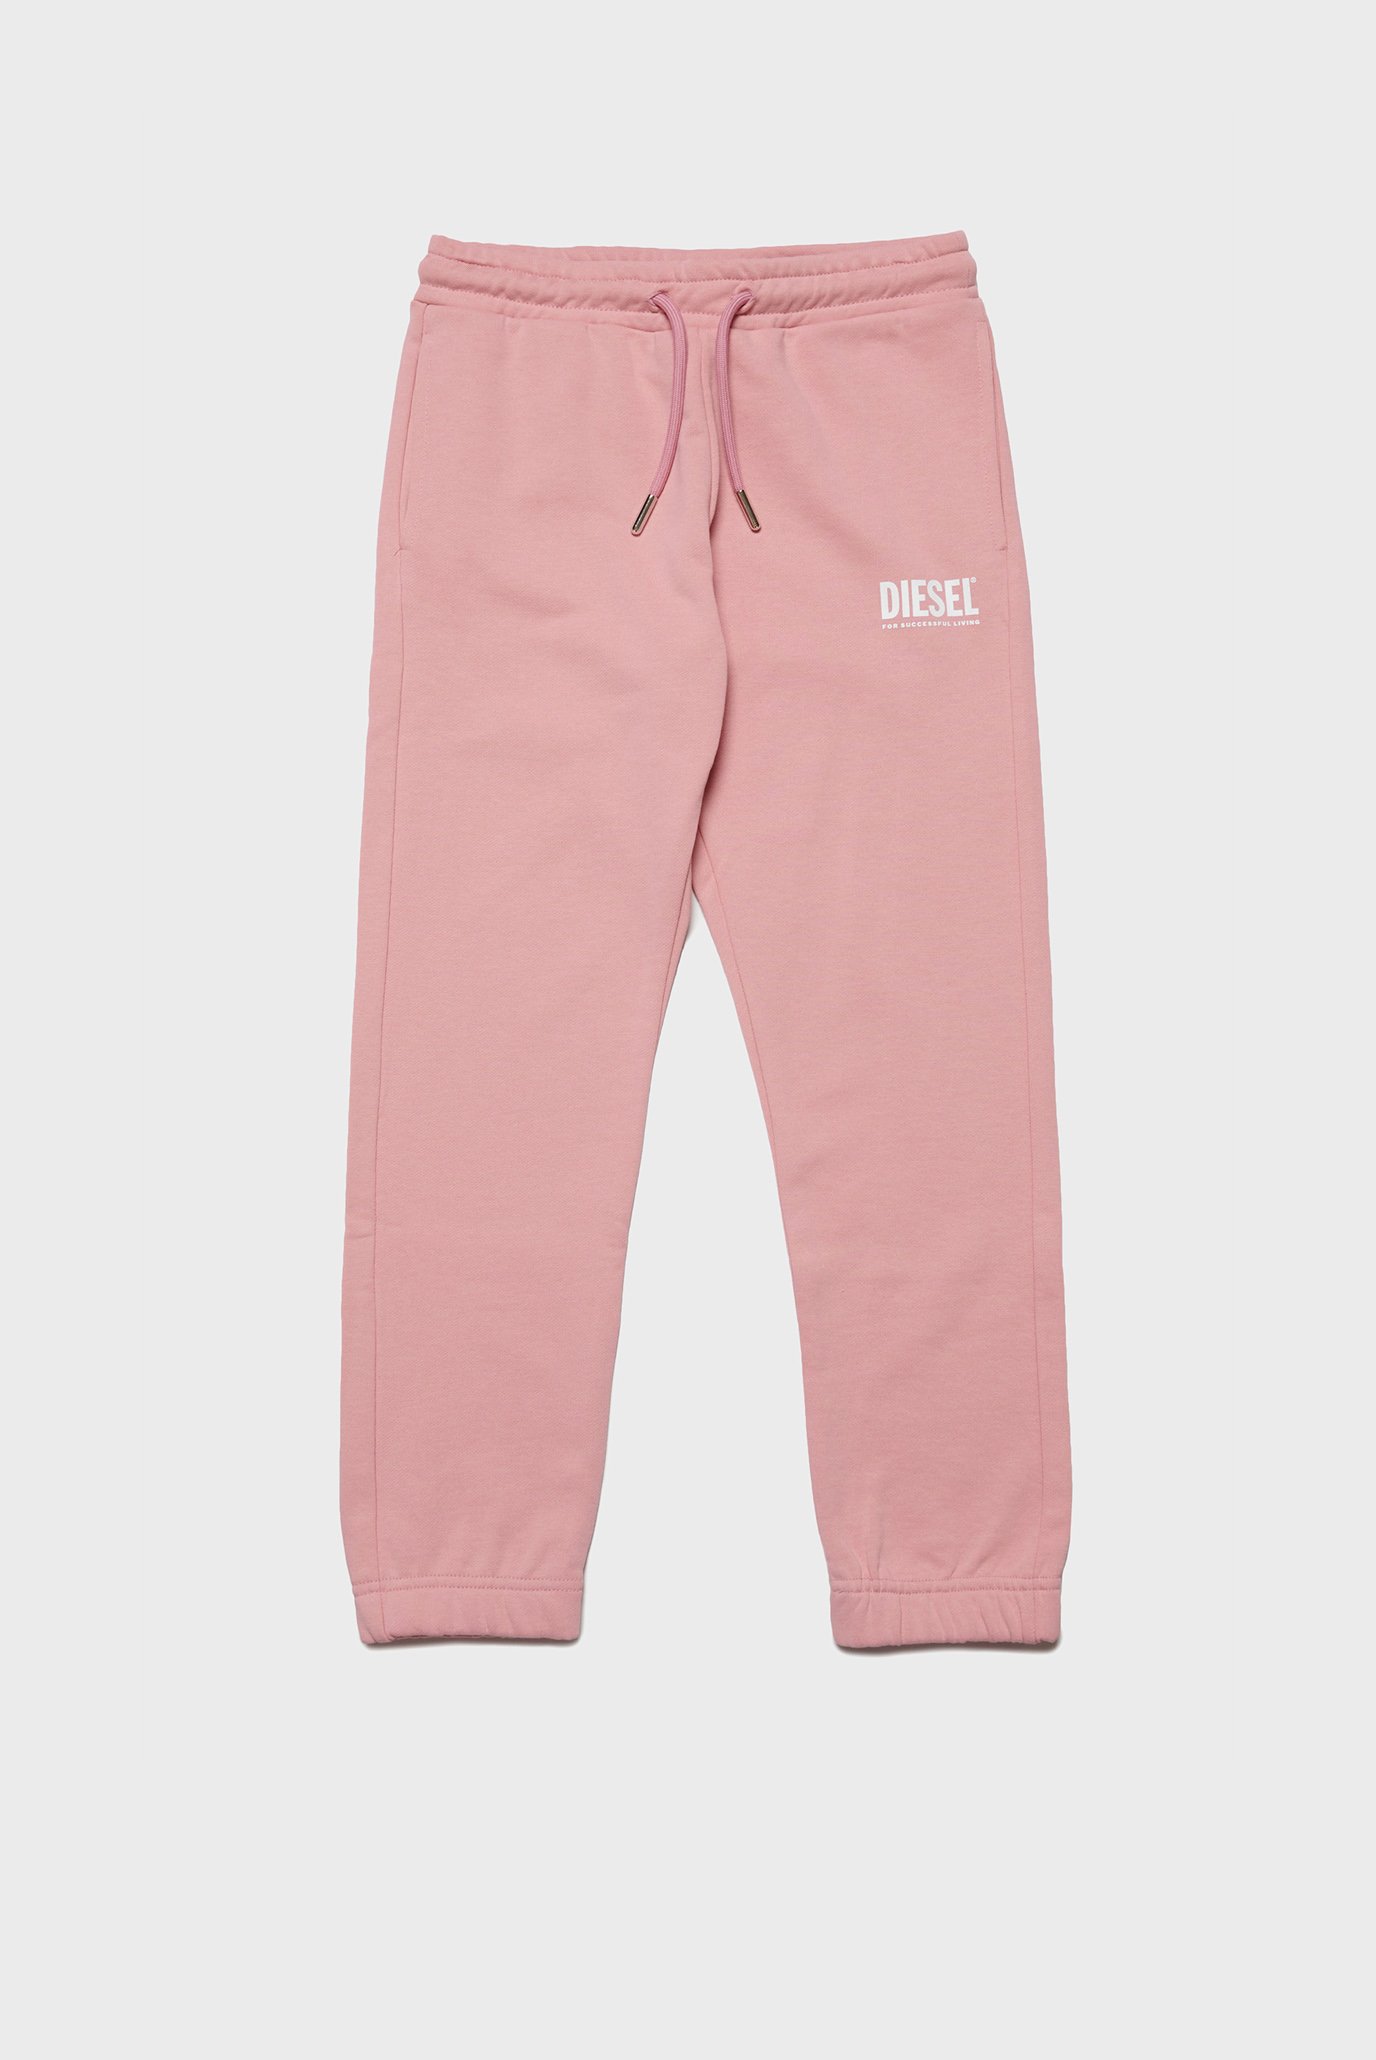 Дитячі рожеві спортивні штани LPENSIU DI PANTS 1